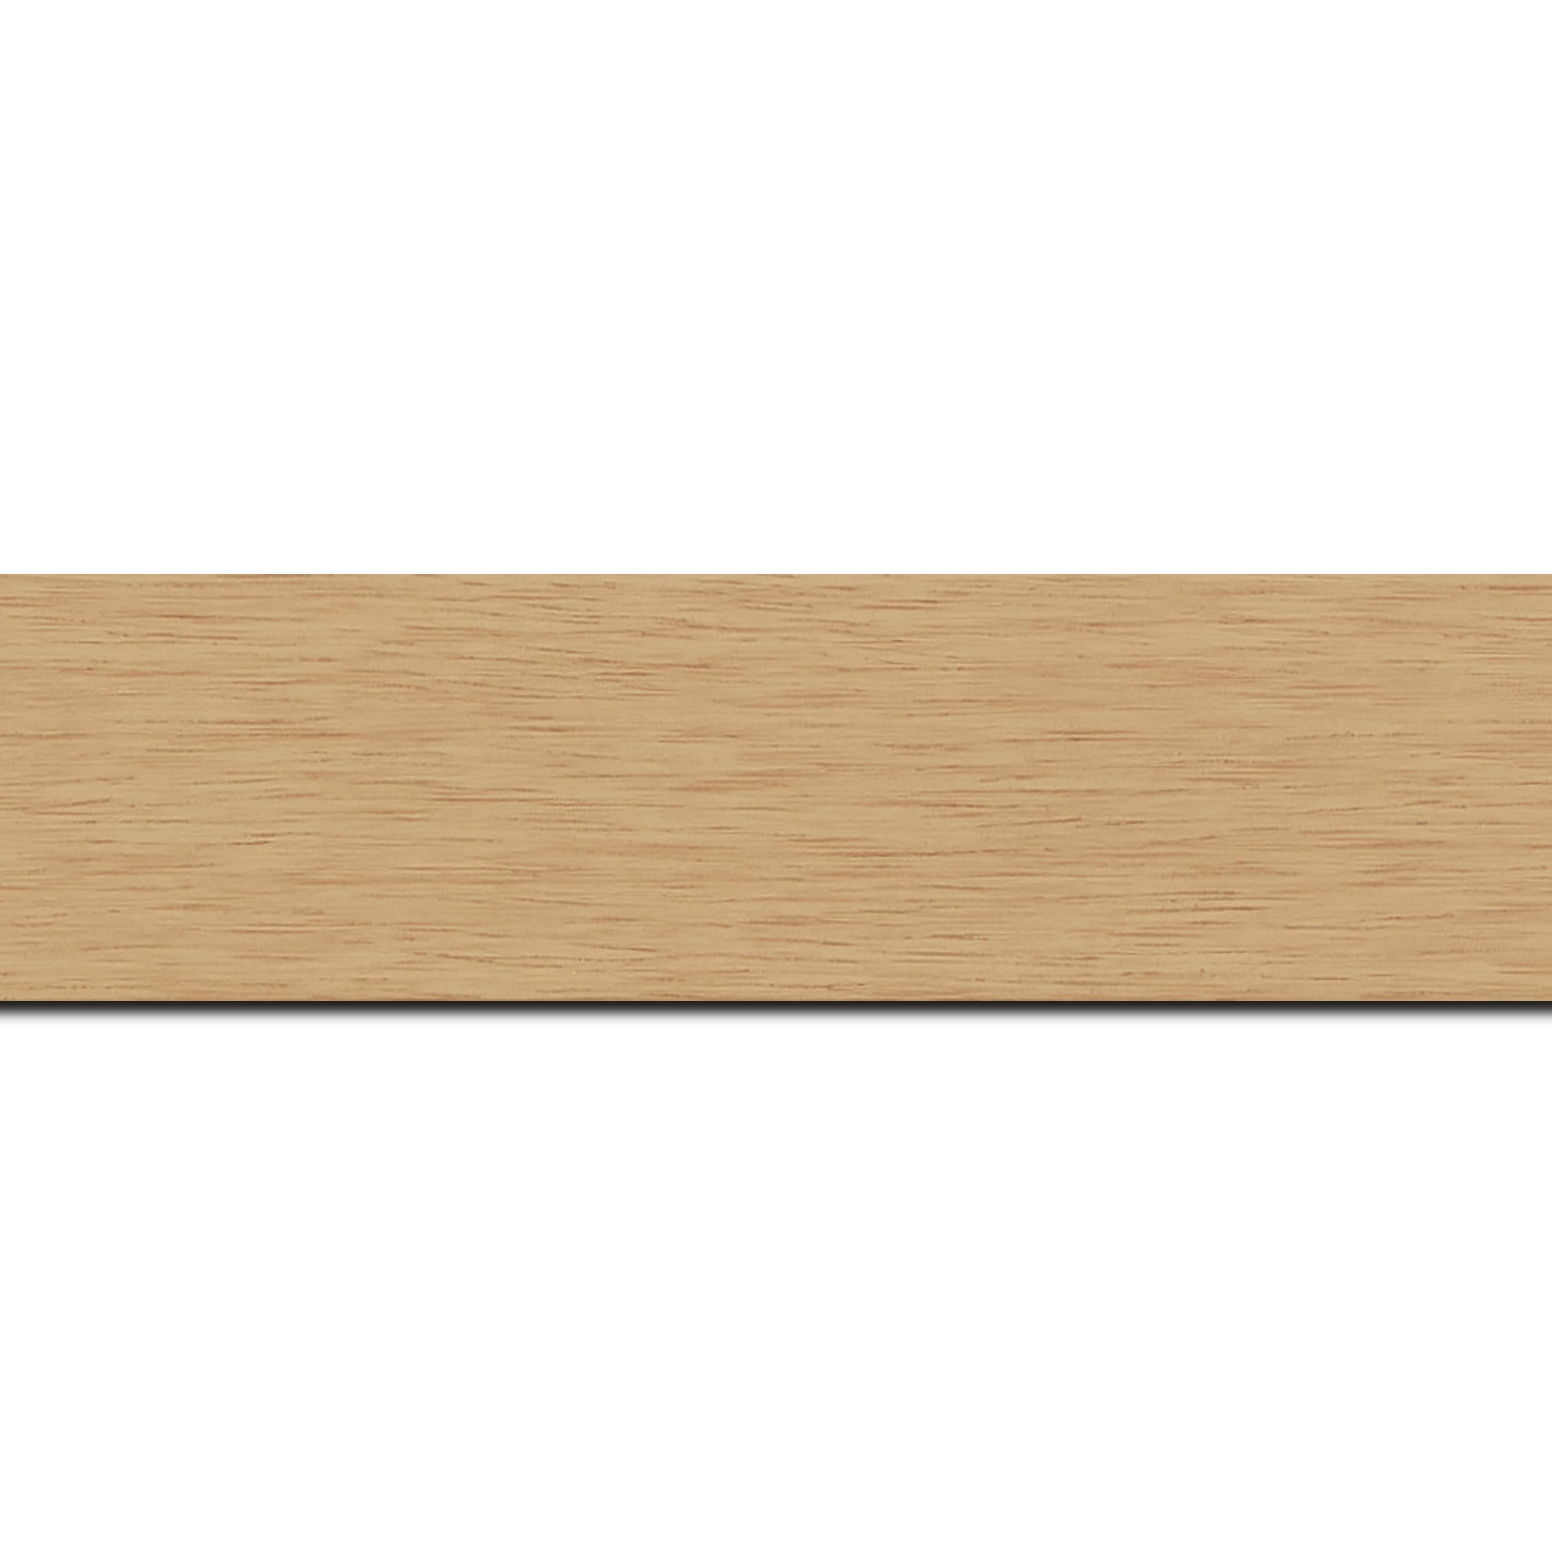 Pack par 12m, bois profil plat largeur 4.1cm couleur naturel satiné (longueur baguette pouvant varier entre 2.40m et 3m selon arrivage des bois)